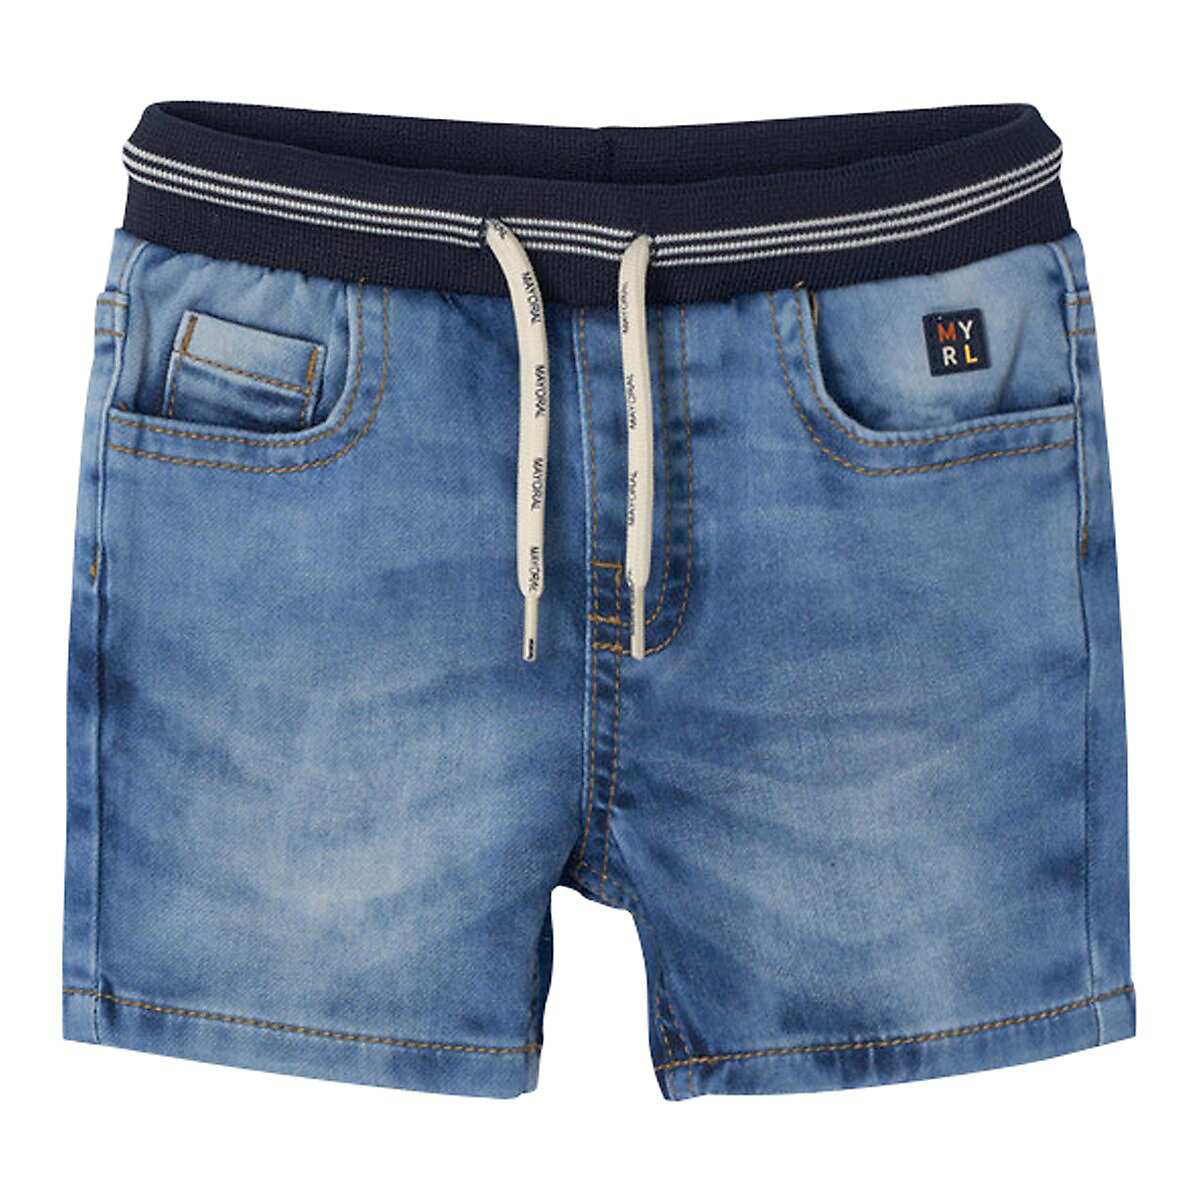 Mayoral Jeans-Shorts 5 Pocket Softbund blau